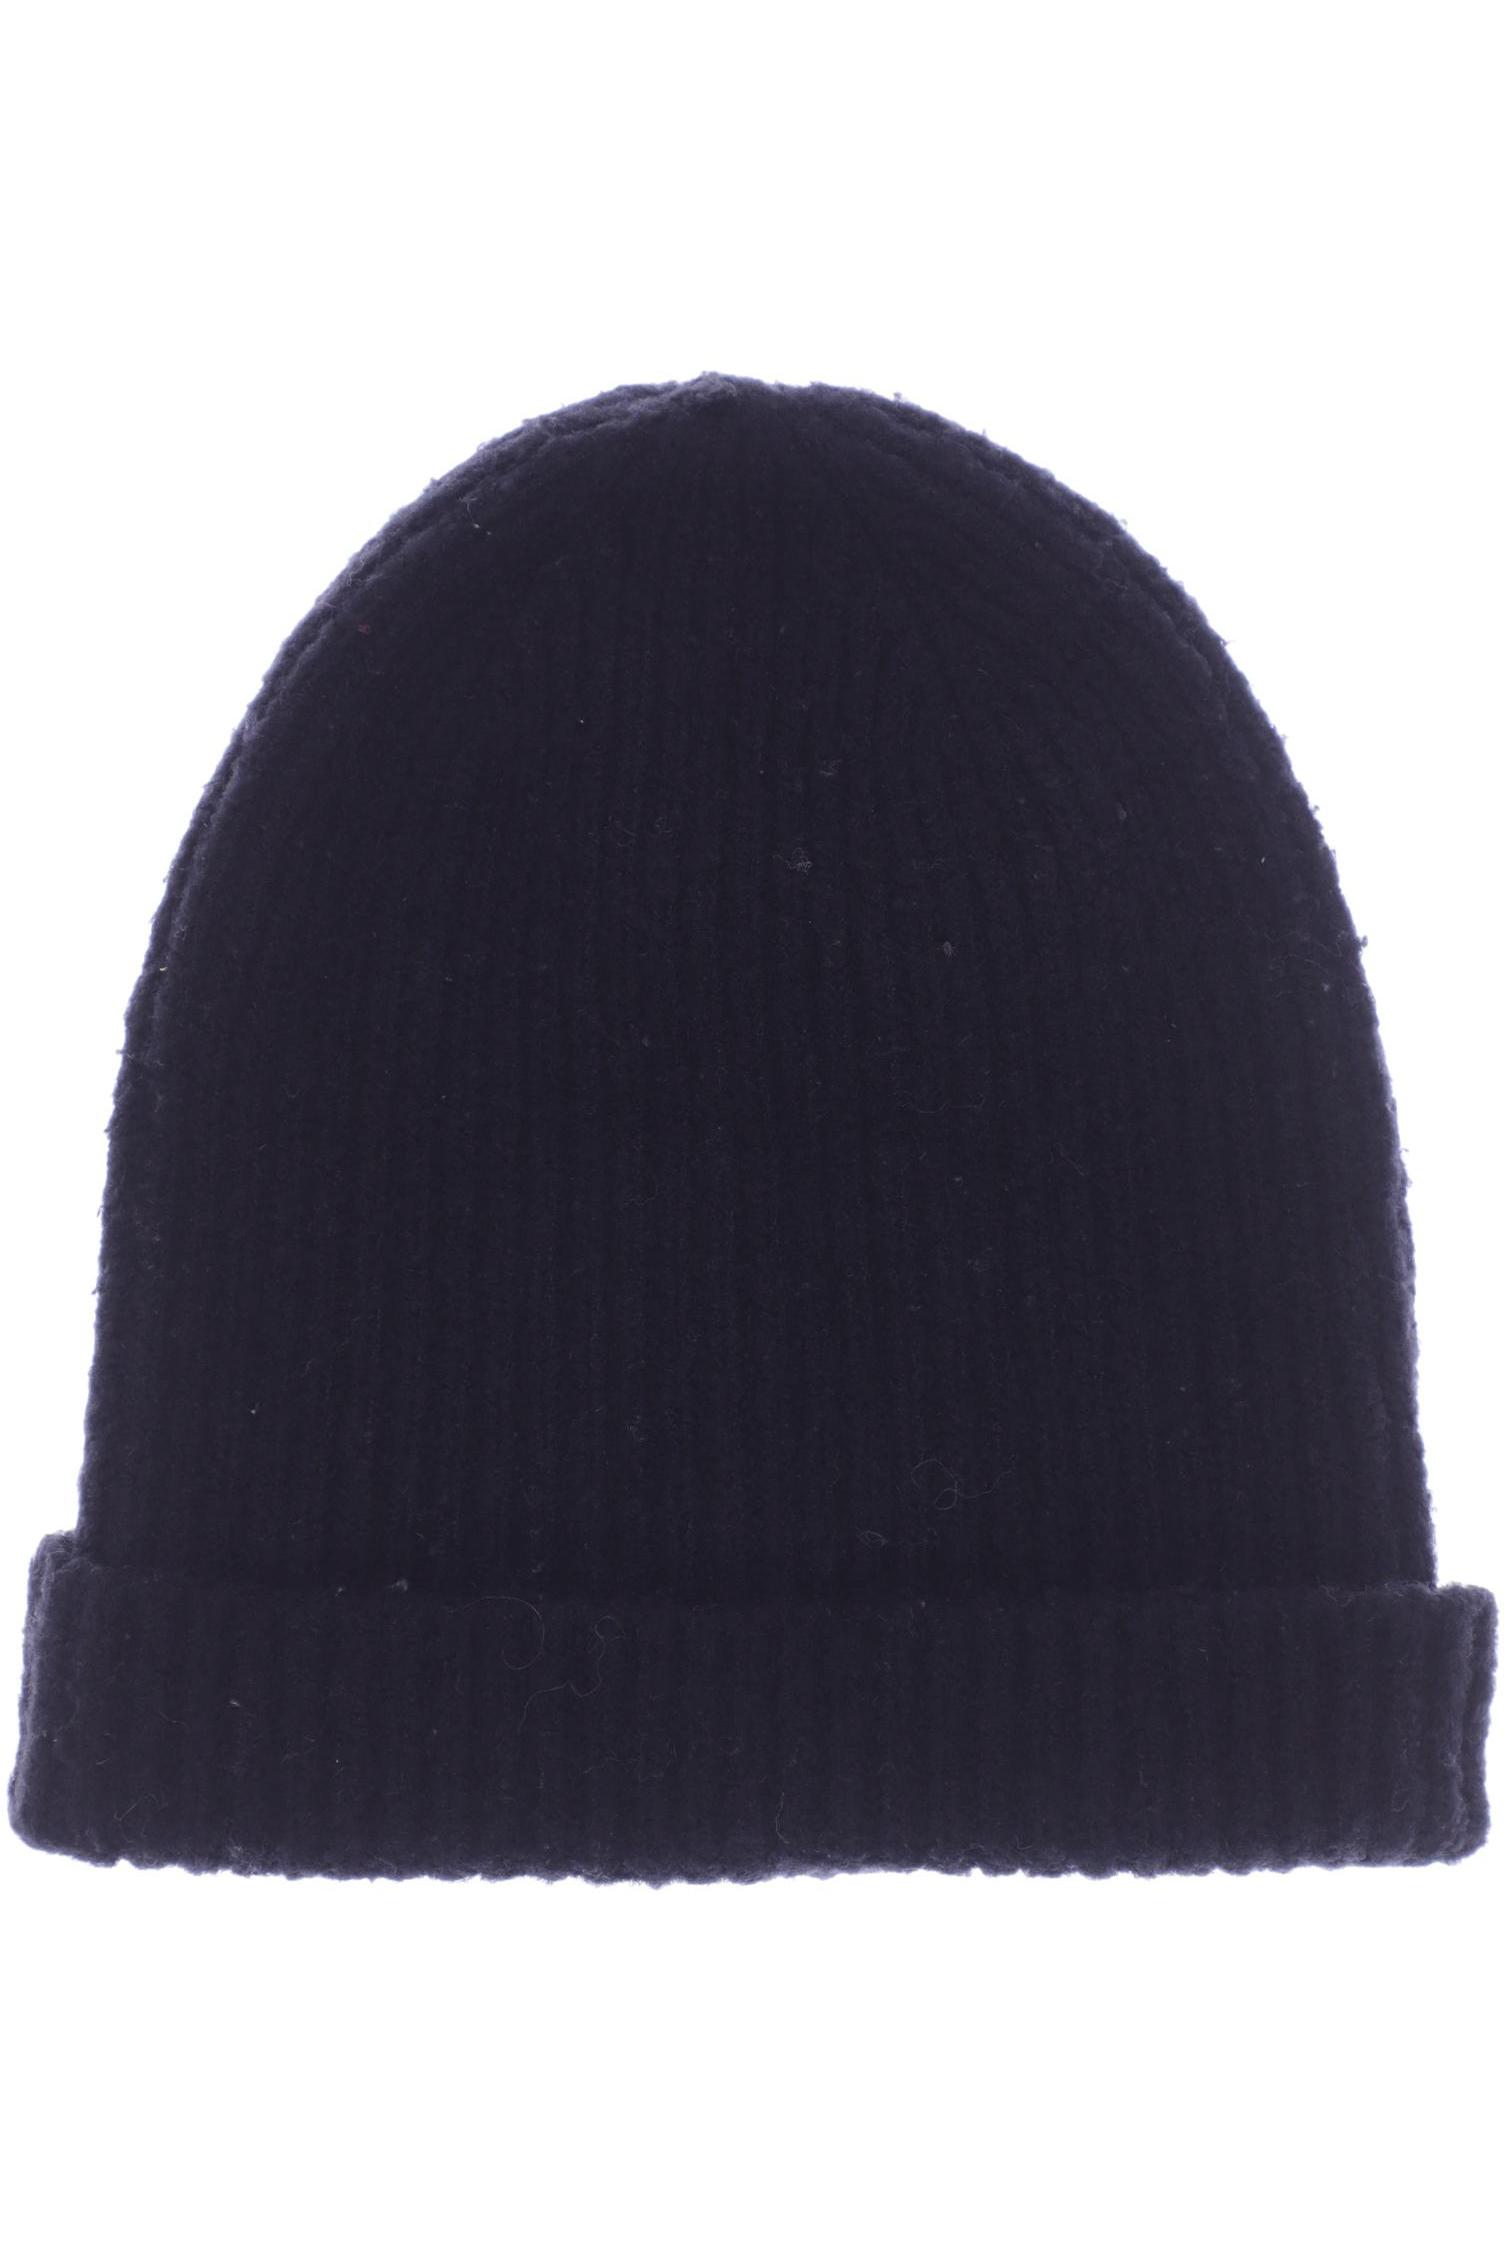 RINO&PELLE Damen Hut/Mütze, schwarz von RINO&PELLE